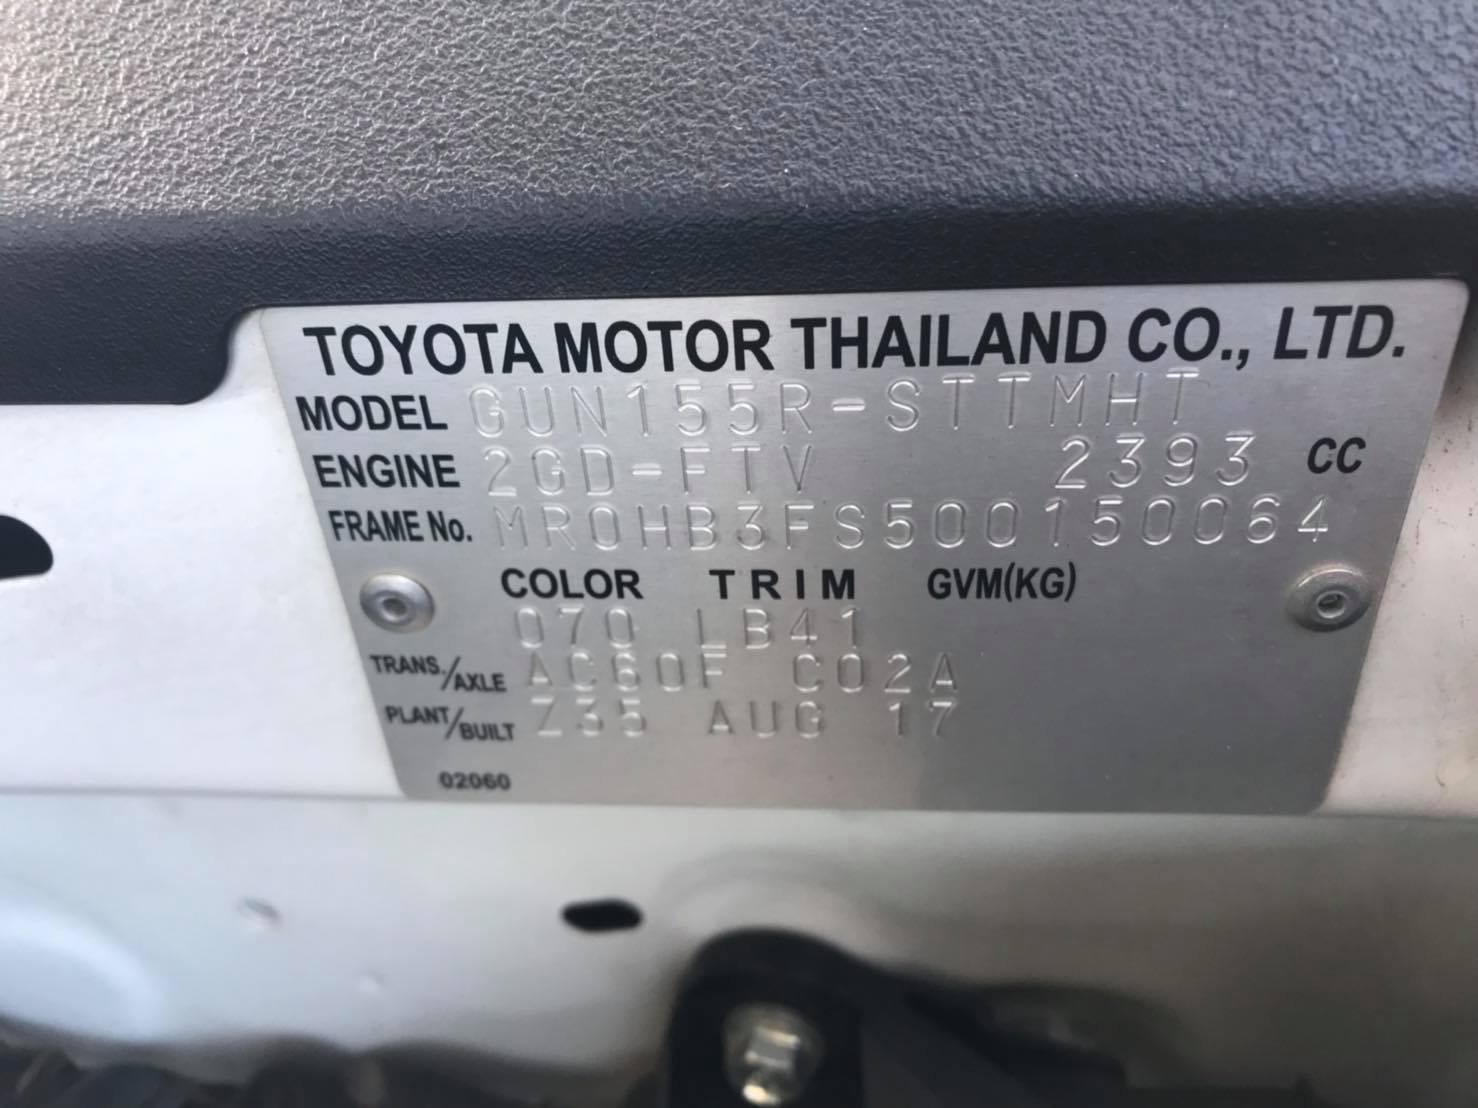 Toyota Fortuner GEN 2 ปี 2017 สีขาว